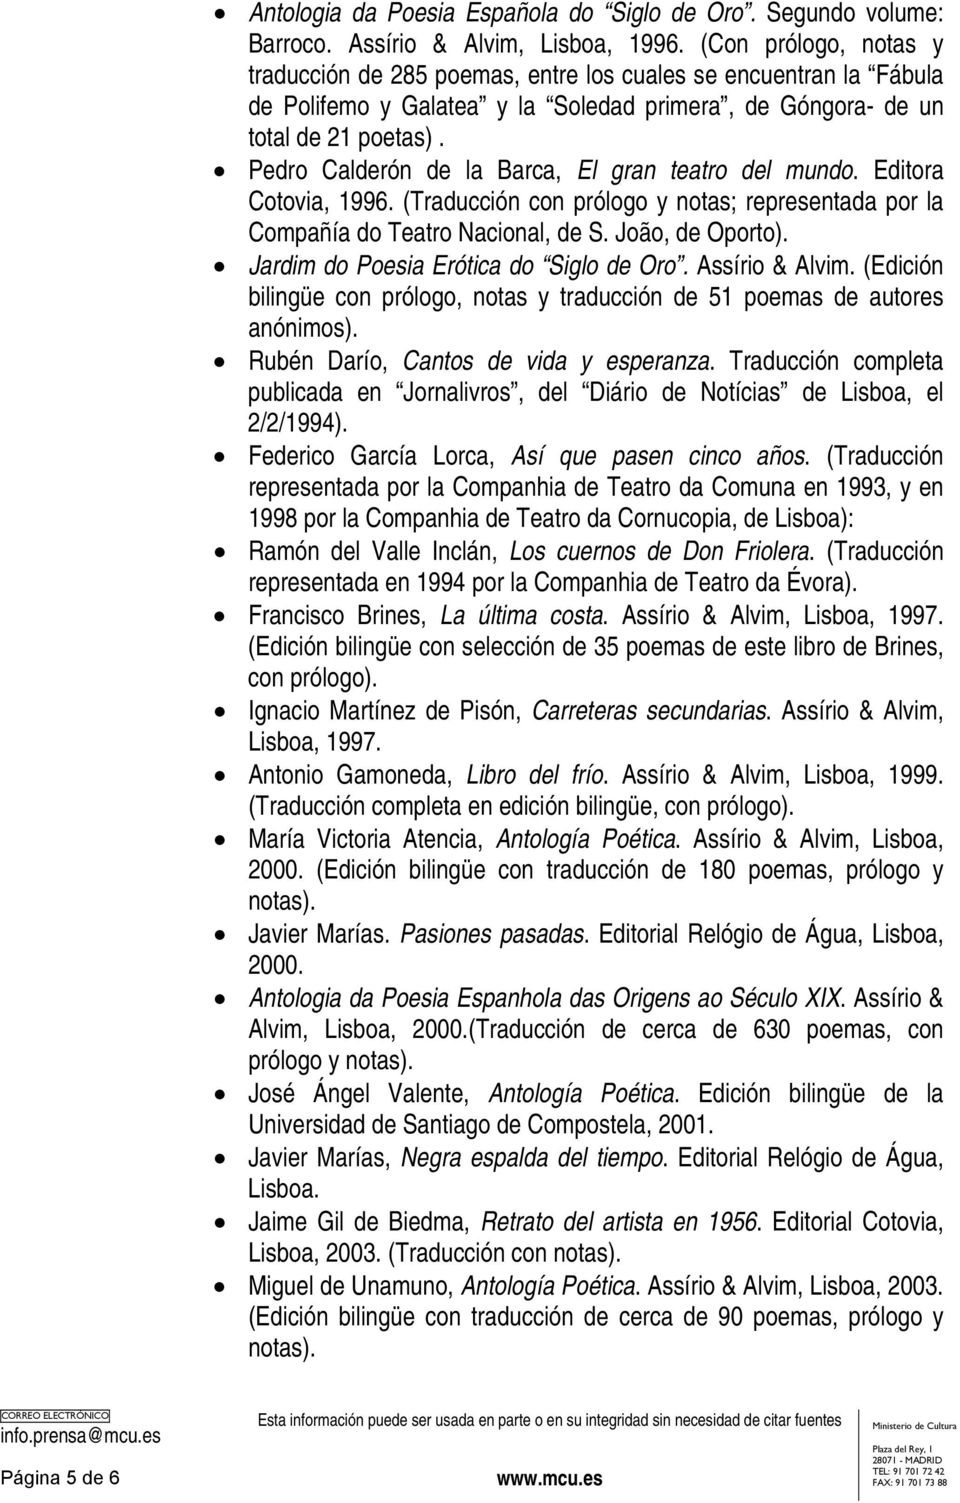 Pedro Calderón de la Barca, El gran teatro del mundo. Editora Cotovia, 1996. (Traducción con prólogo y notas; representada por la Compañía do Teatro Nacional, de S. João, de Oporto).